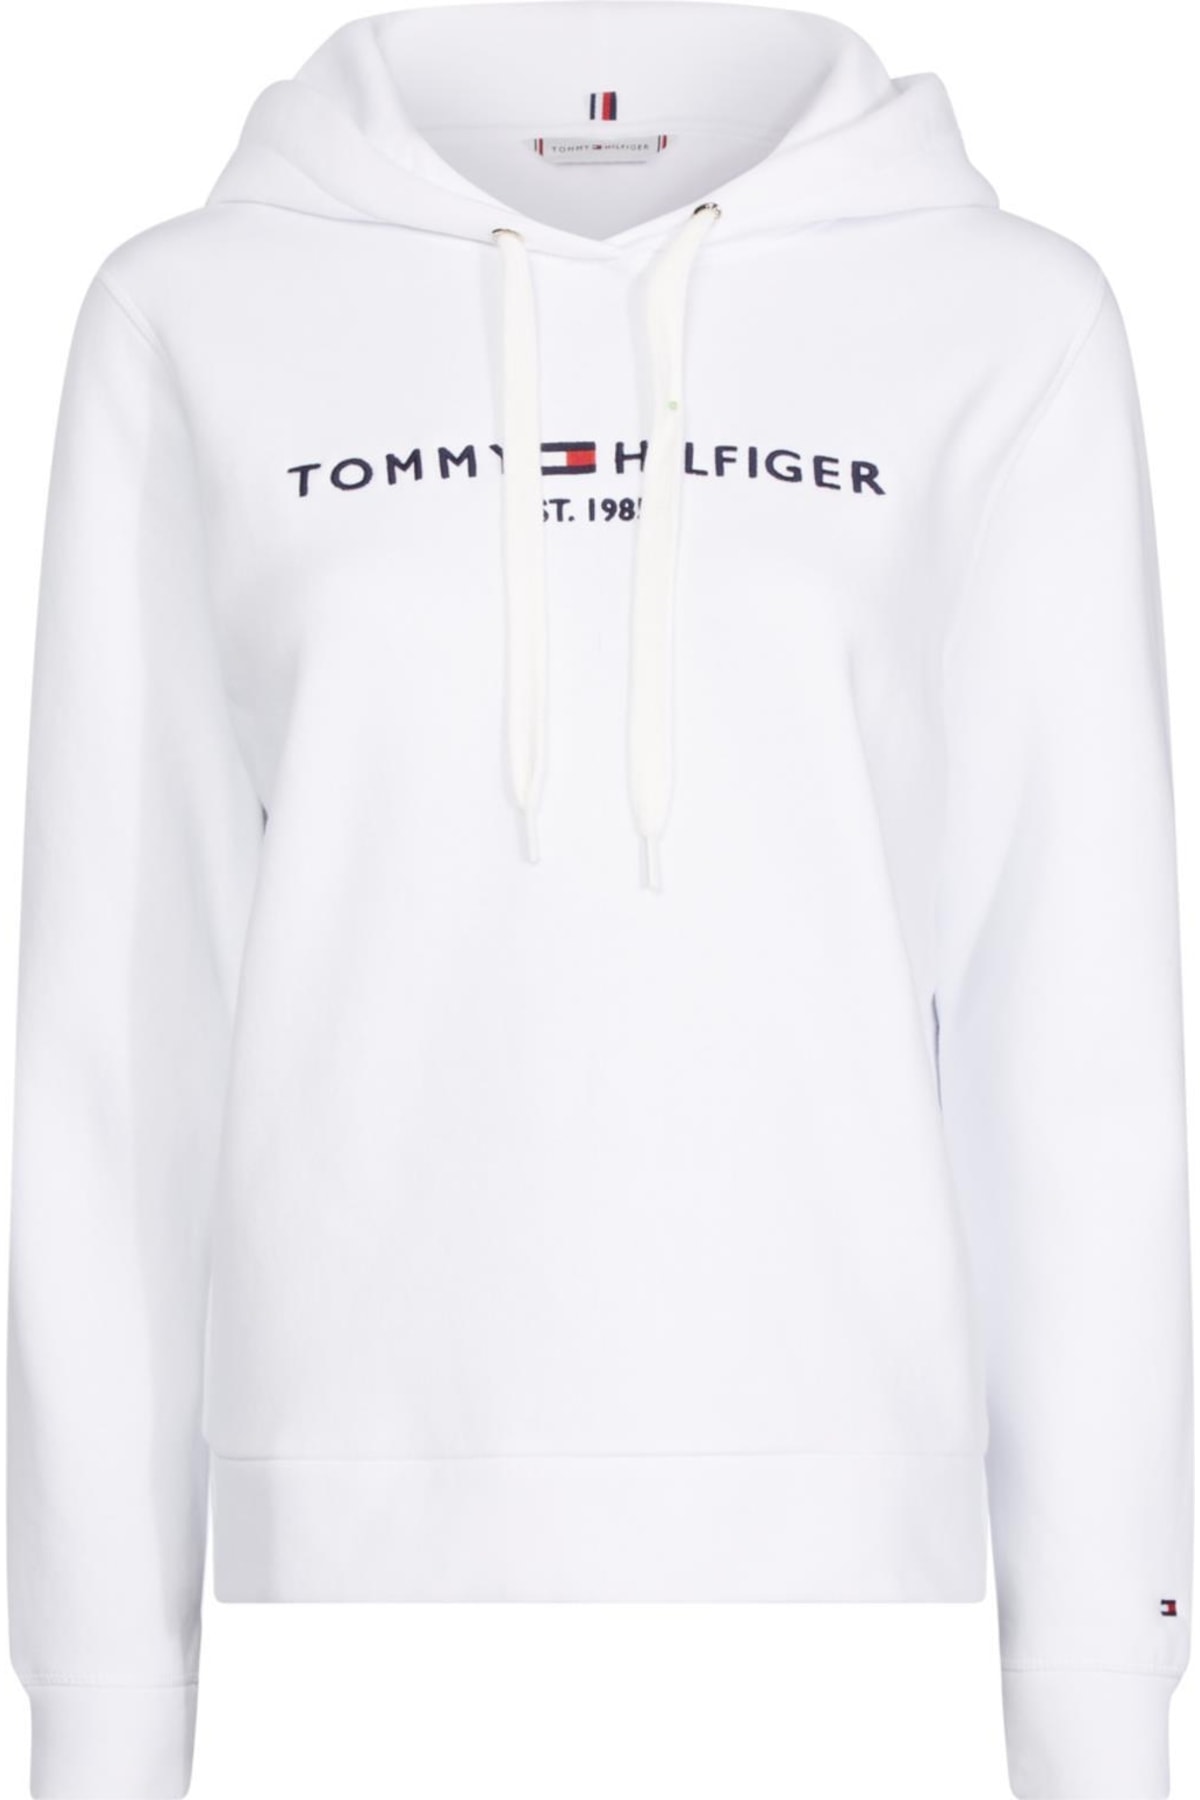 Tommy Hilfiger Sweatshirt Weiß Regular Fit Fast ausverkauft